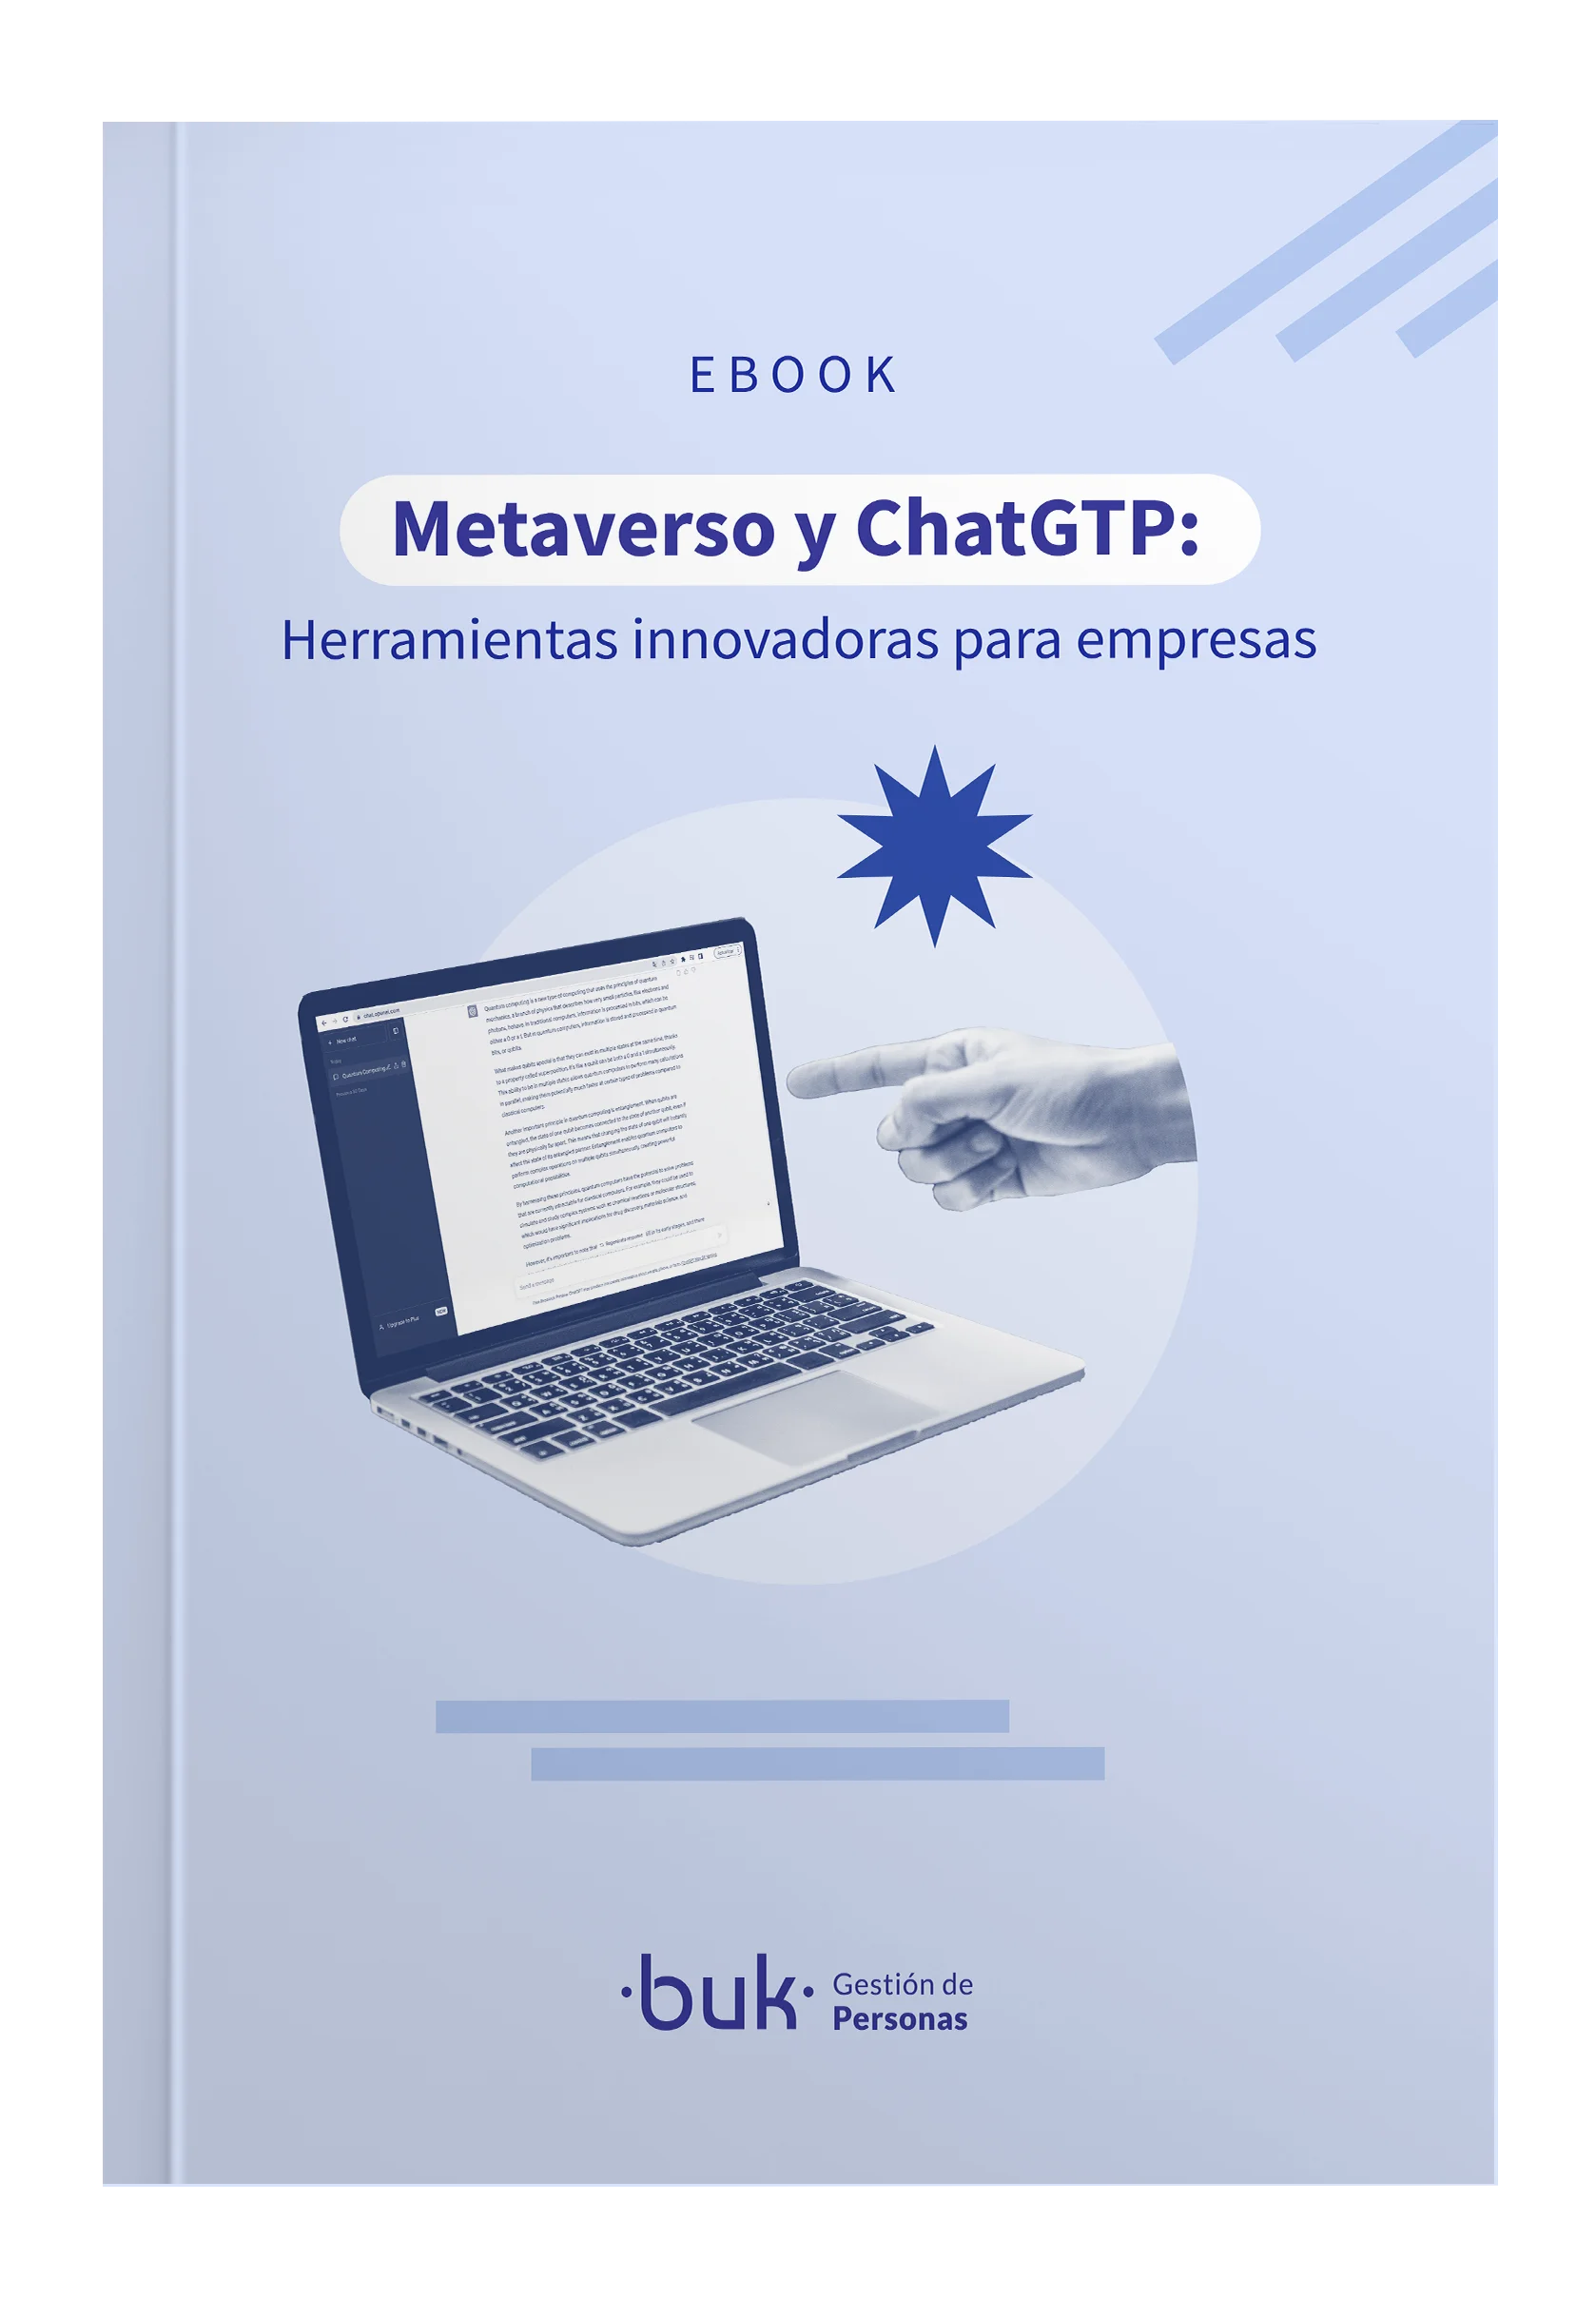 Metaverso y ChatGPT como herramientas innovación para empresa